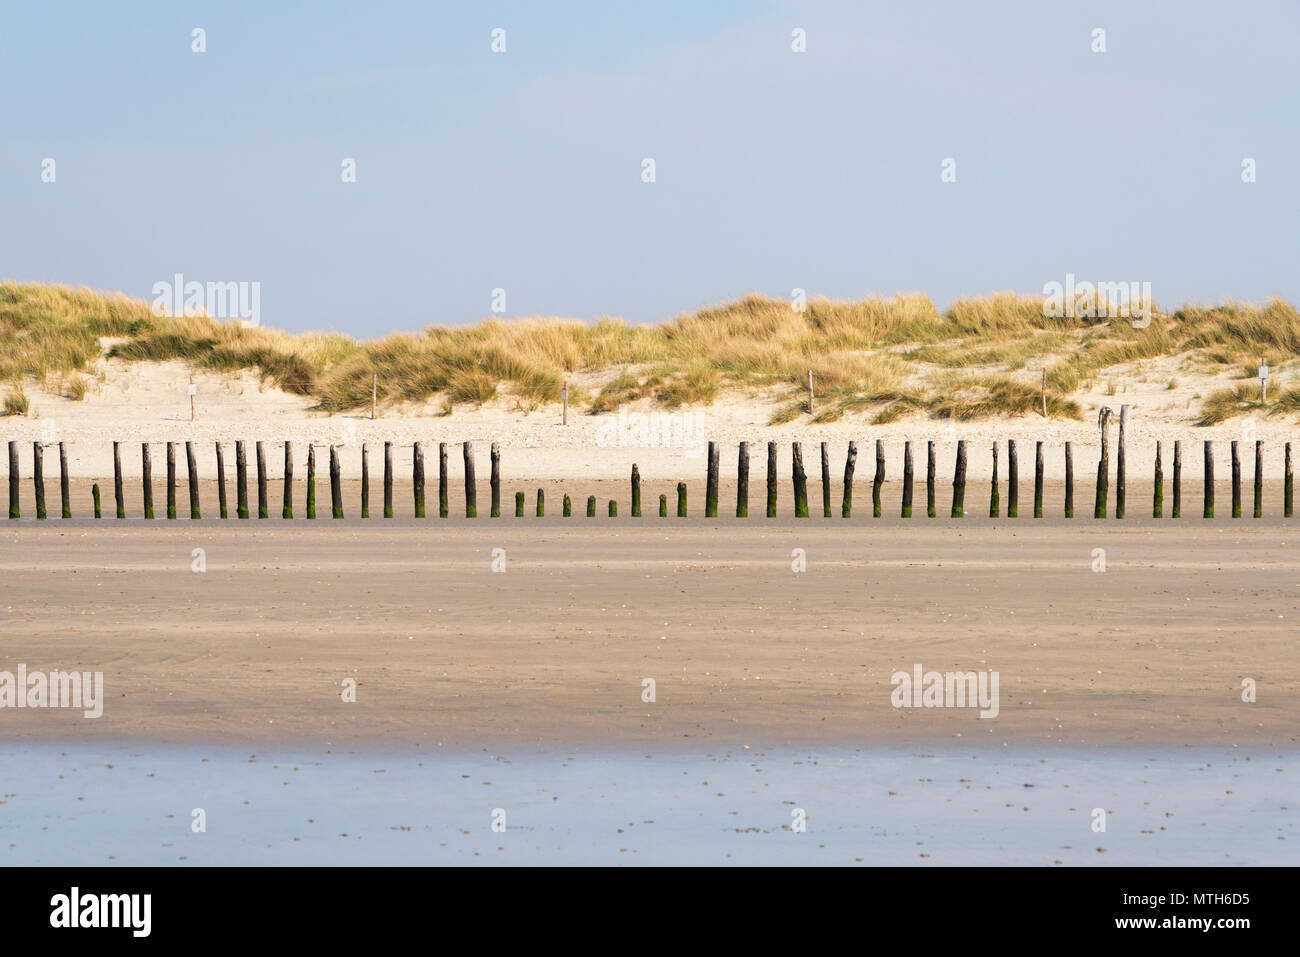 Eine Linie der Holz- buhnen, installiert, um zu helfen, die Sanddünen gegen Erosion durch das Meer schützen an diesem Teil der Küste von Sussex. Stockfoto